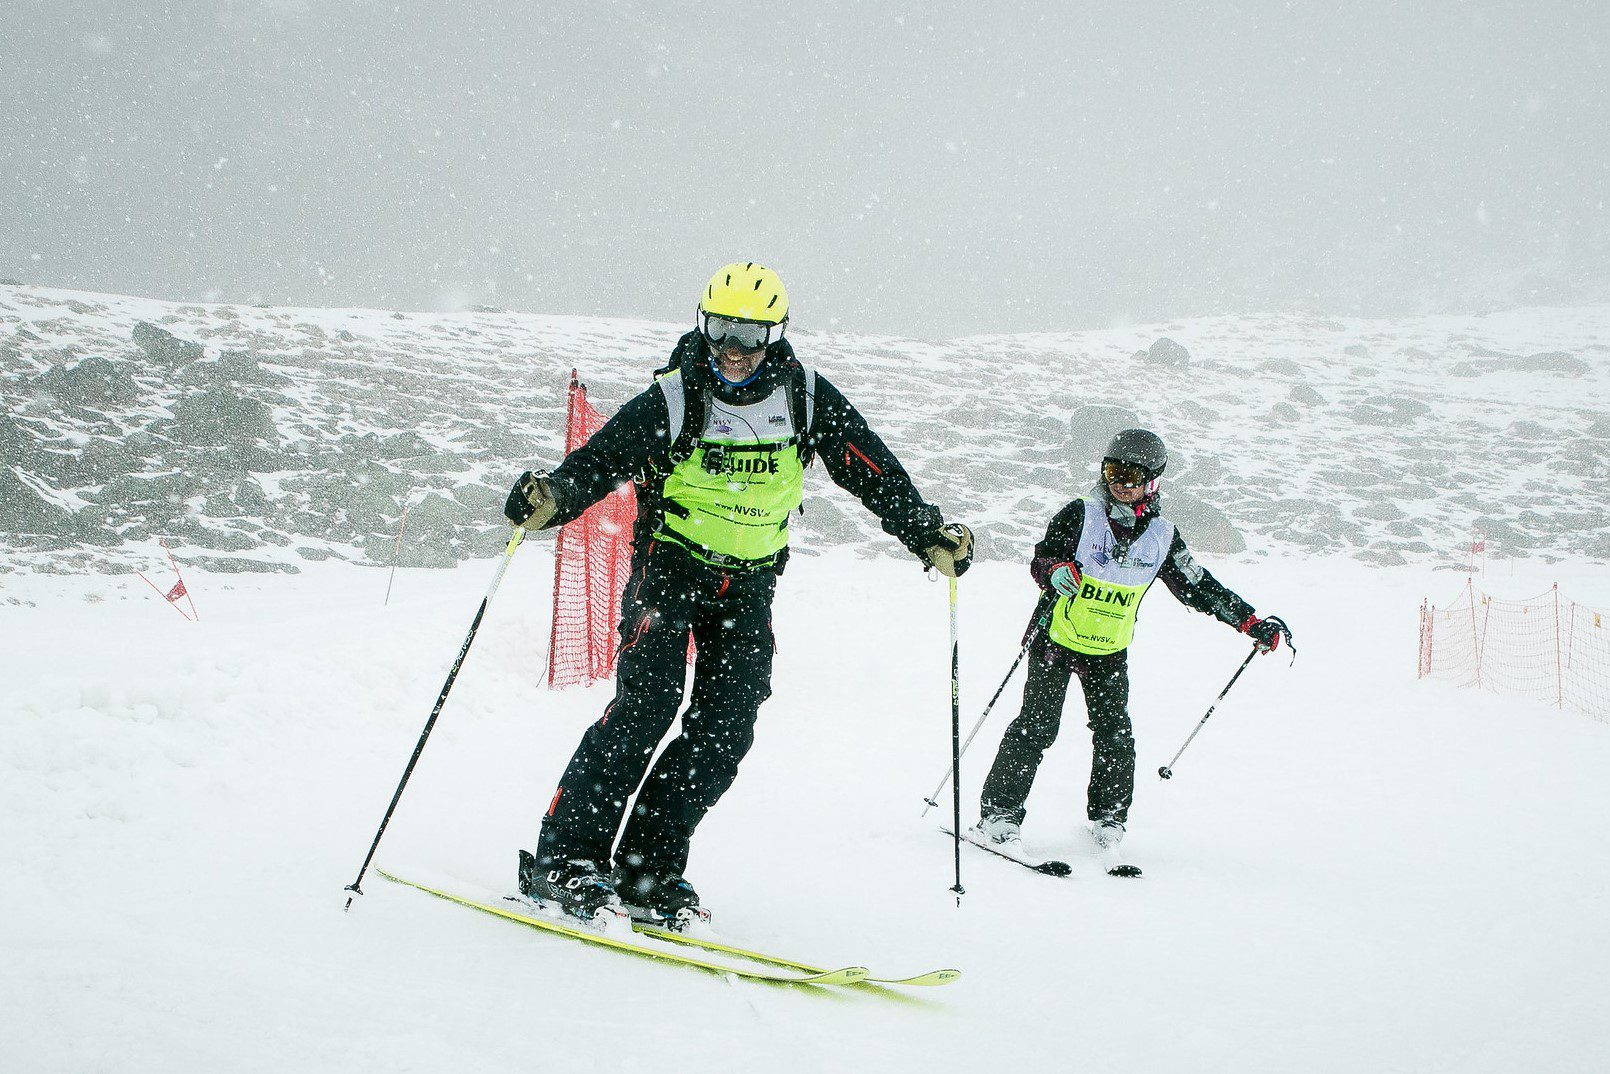 axiwi-wintersport-fysieke-beperking-ski